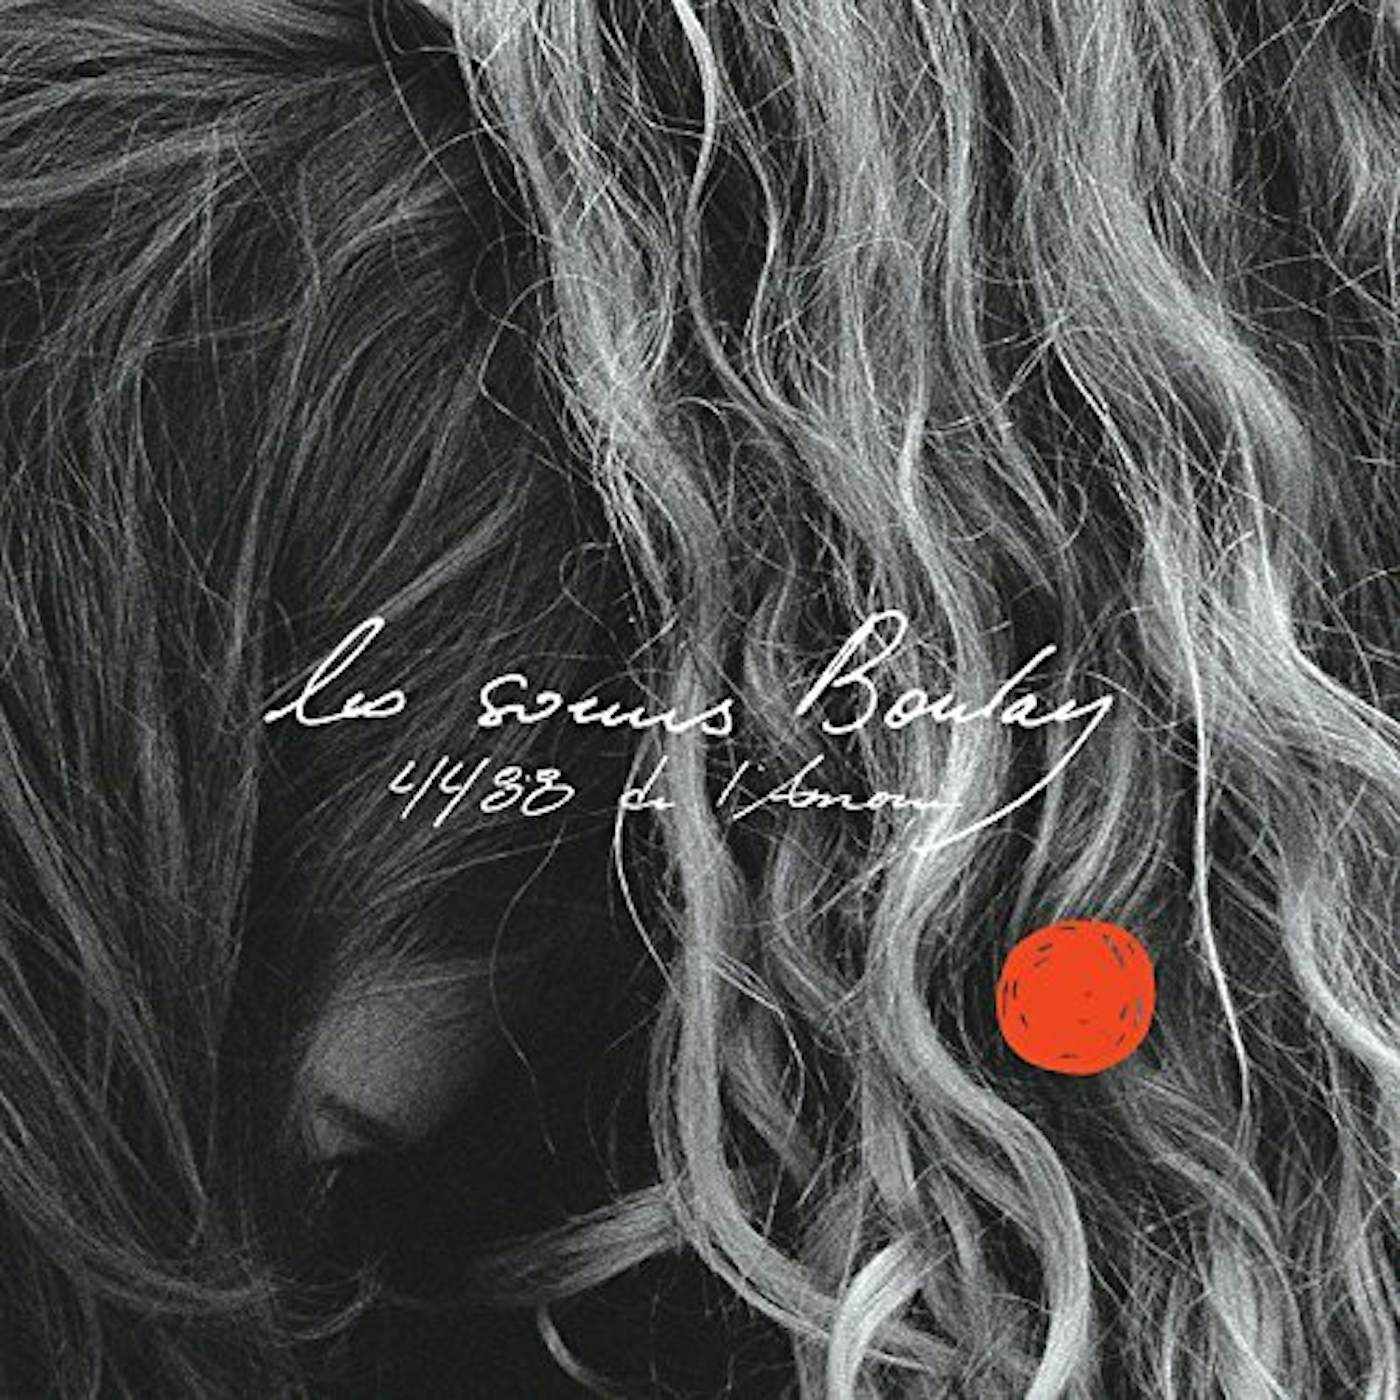 Soeurs Boulay 4488 de l'amour Vinyl Record